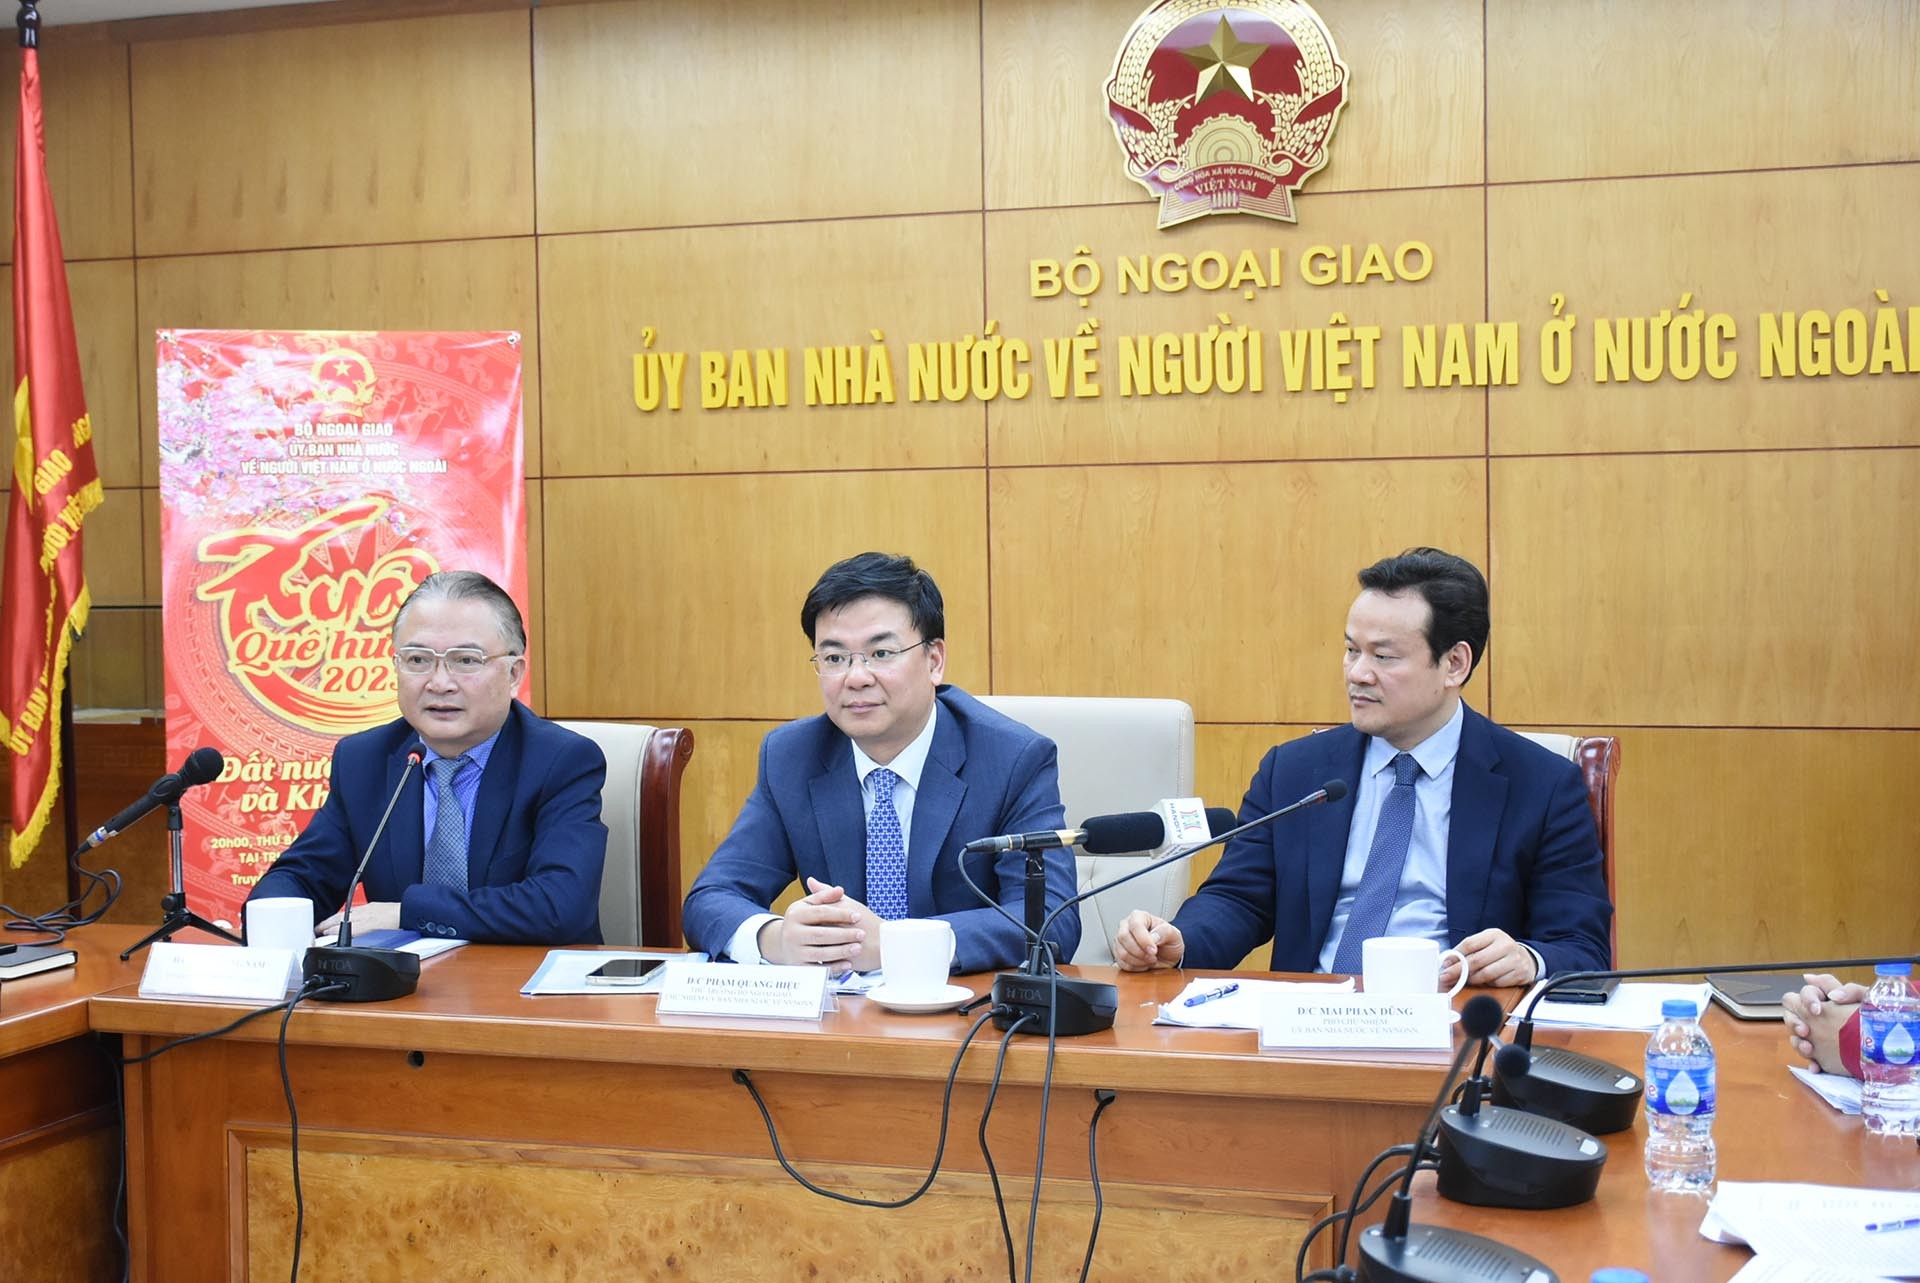 Thứ trưởng Phạm Quang Hiệu chủ trì cuộc gặp gỡ báo chí thông tin về tình hình cộng đồng người Việt Nam ở nước ngoài, kết quả công tác về người Việt Nam ở nước ngoài 2022 và phương hướng năm 2023, ngày 28/12. (Ảnh: Hà Lê)